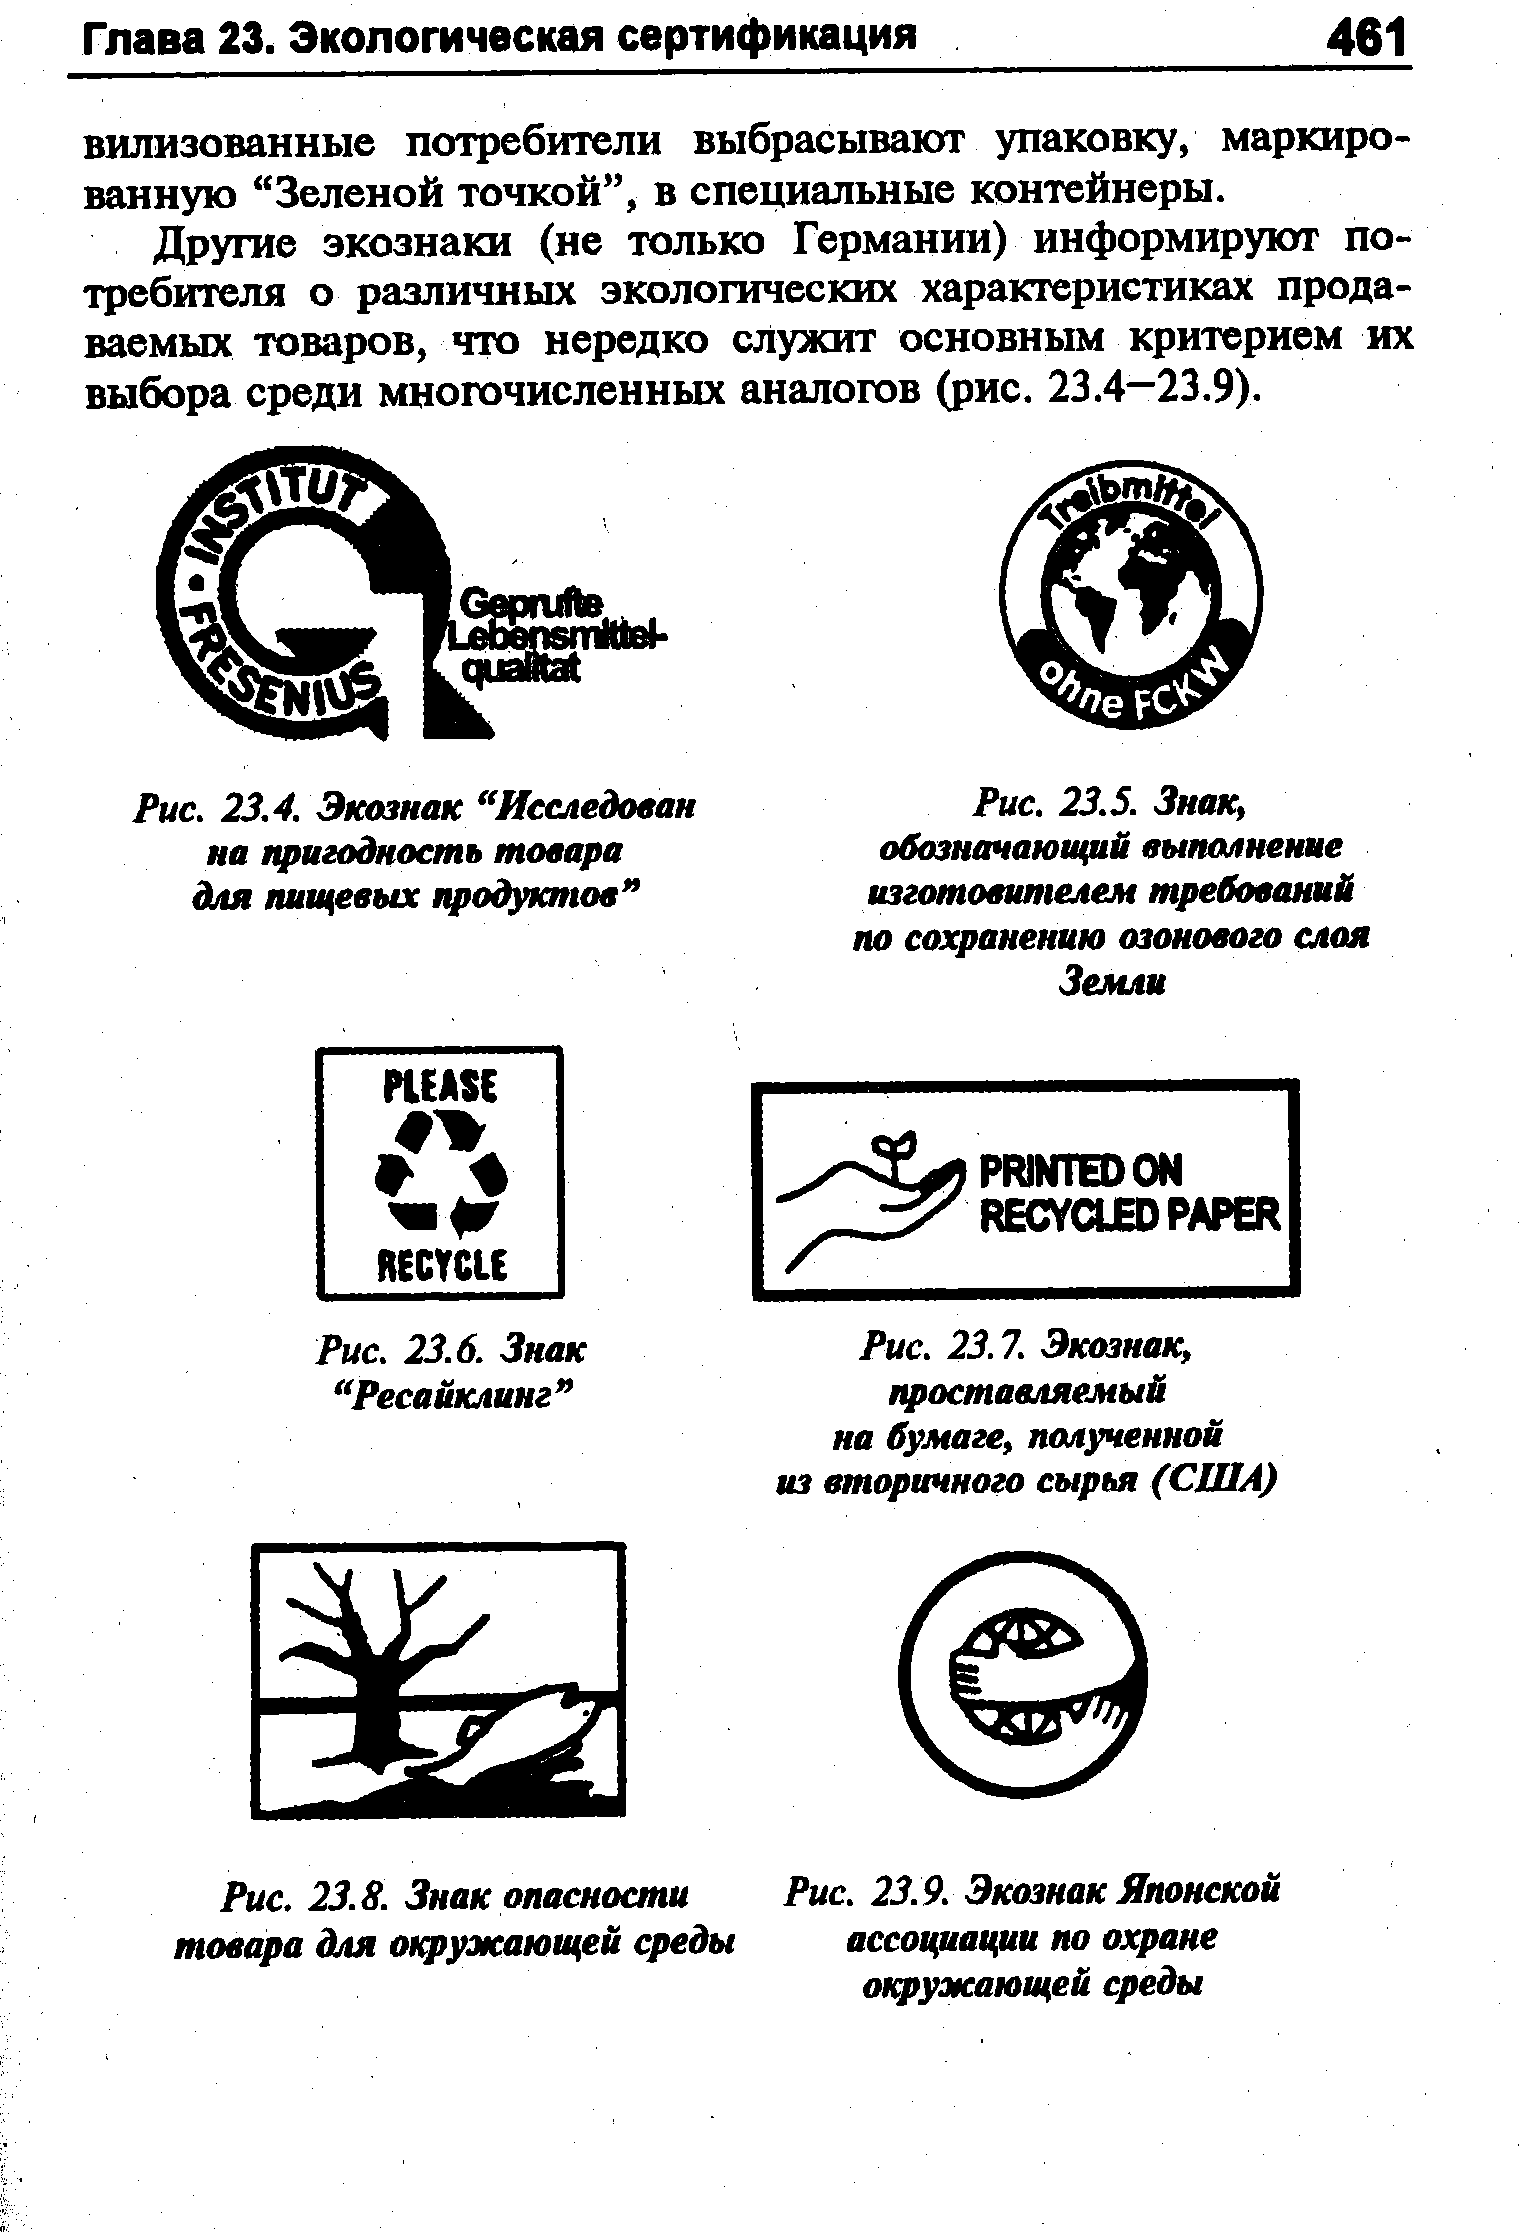 Рис. 23.7. Экоэнак, проставляемый на бумаге, полученной из вторичного сырья (США)
